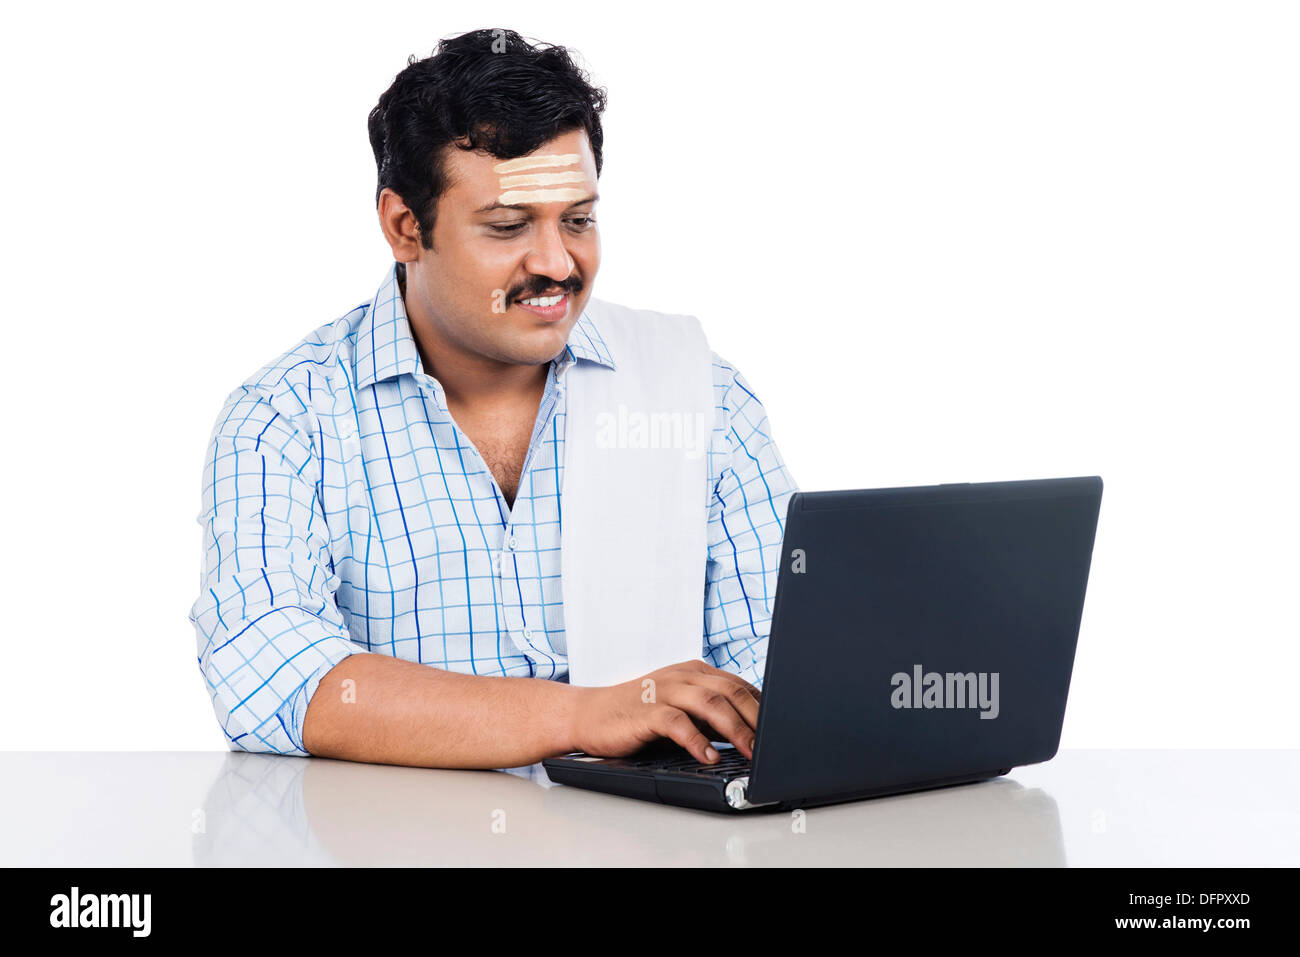 Sud indiane uomo che utilizza un notebook Foto Stock